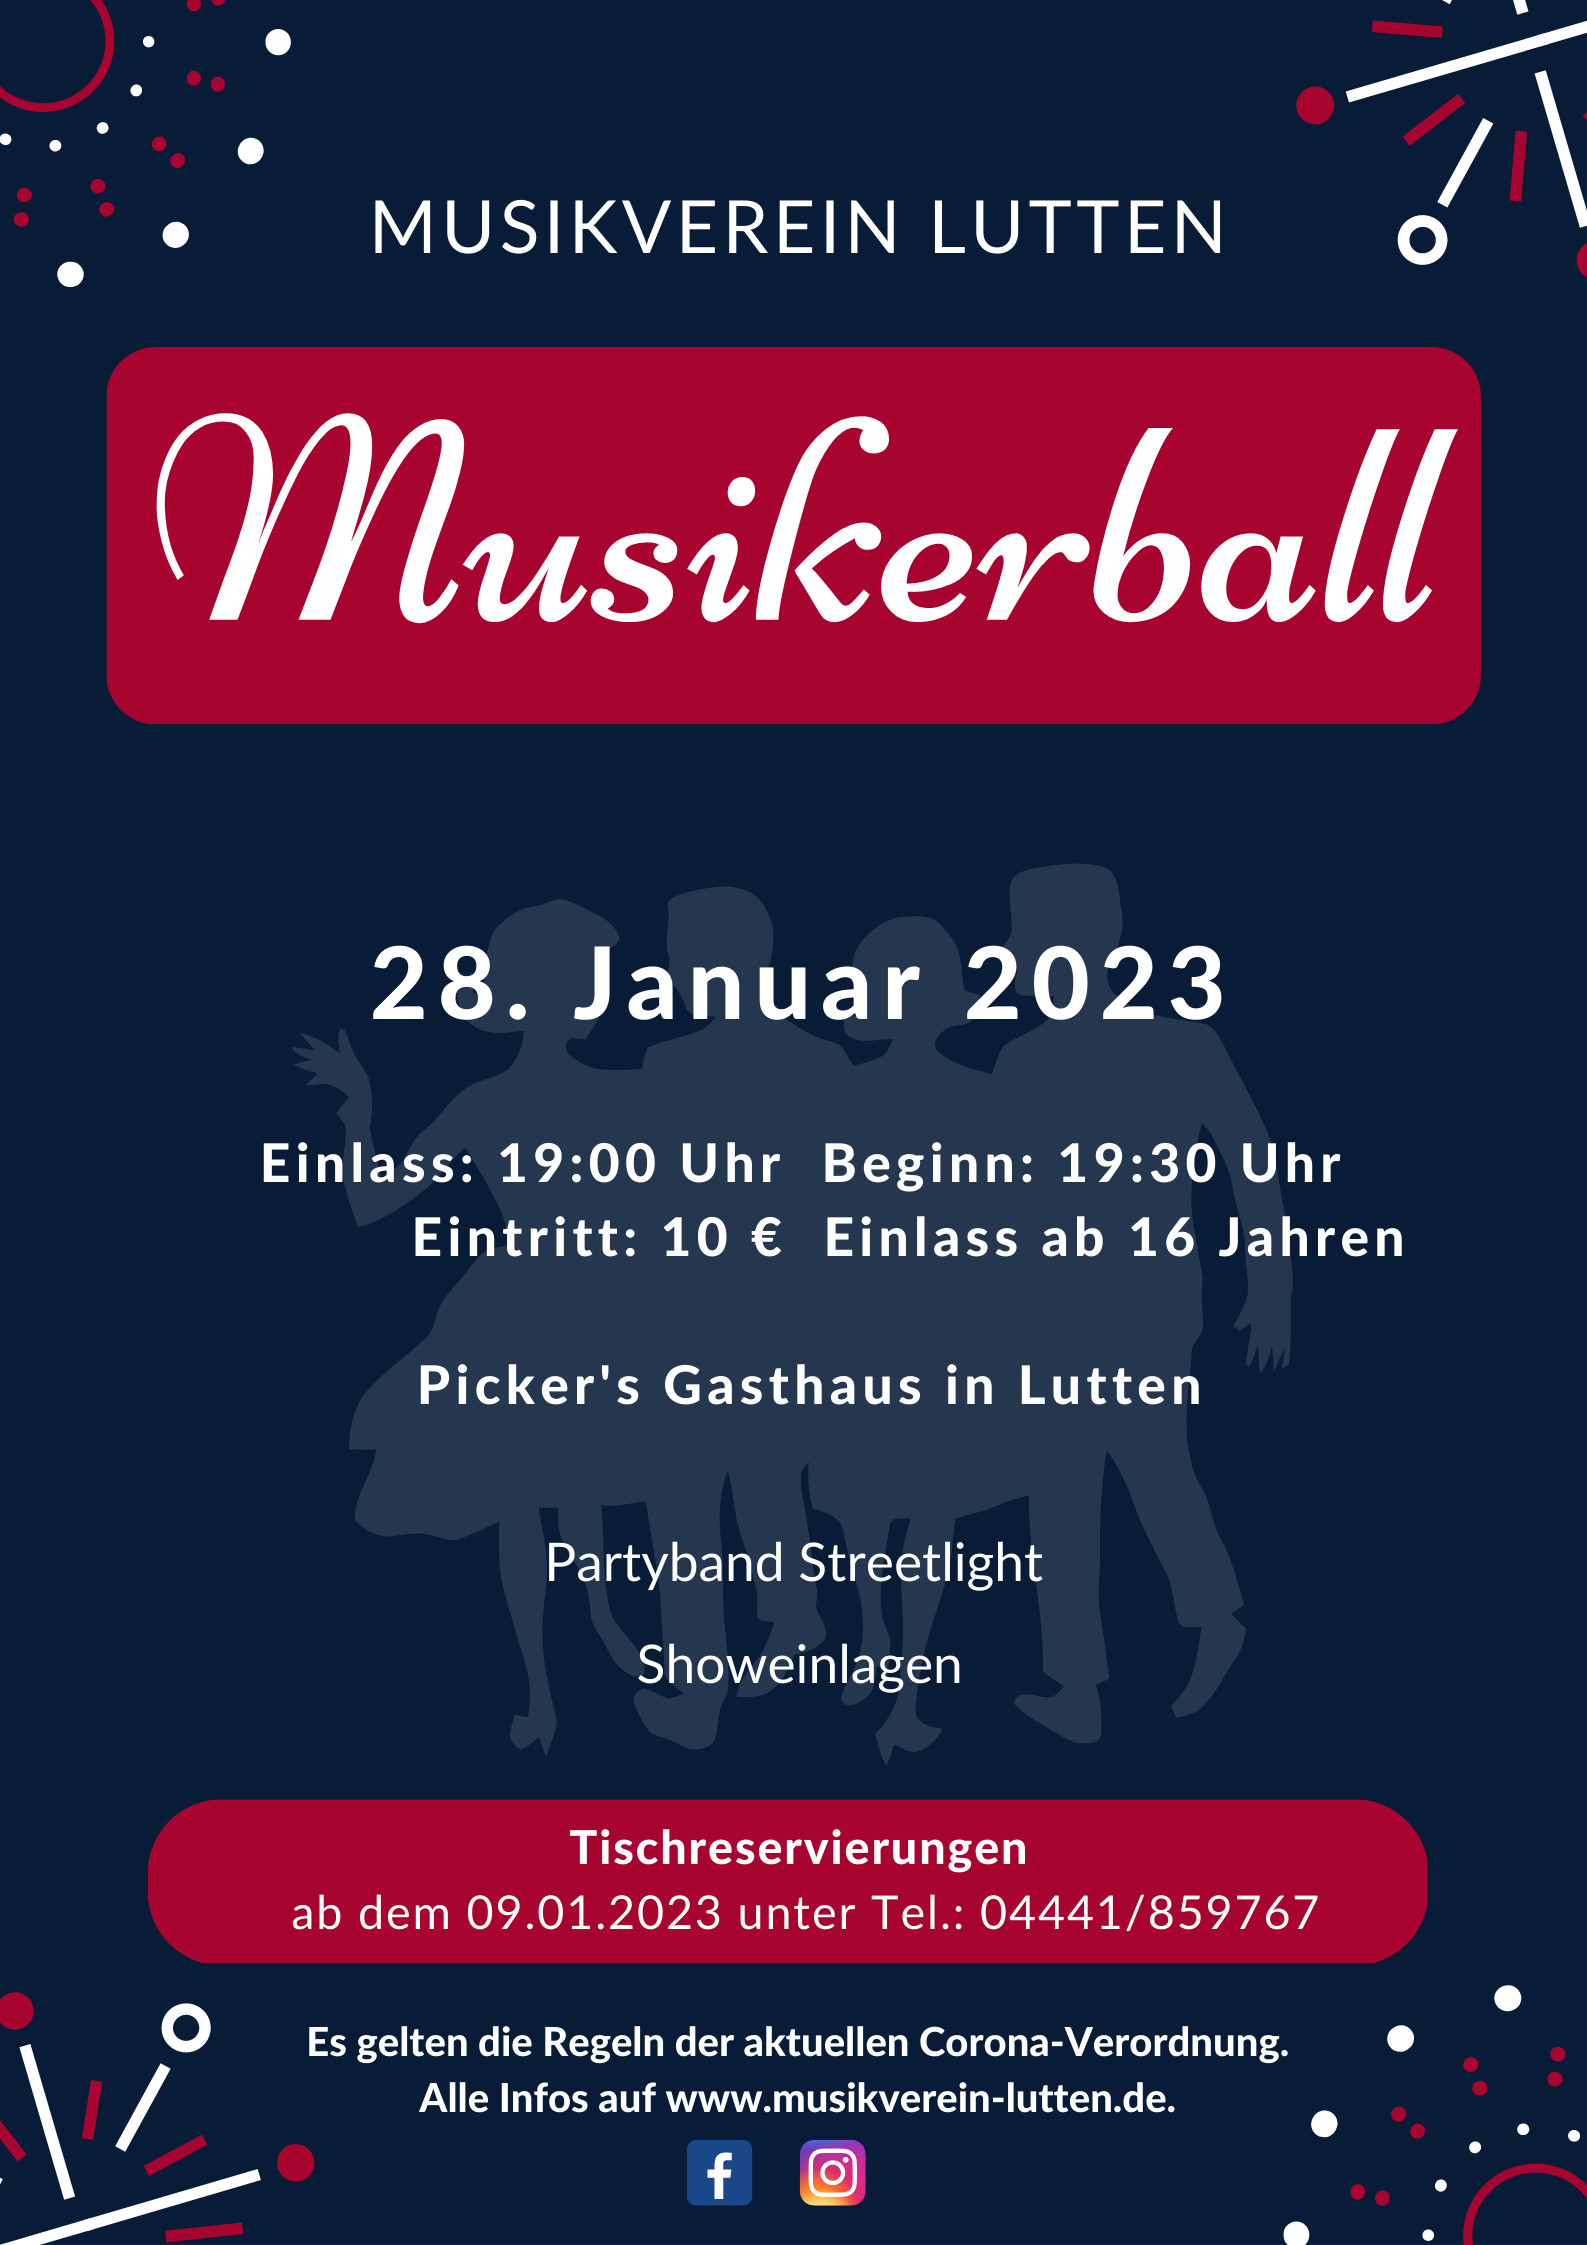 Plakat Musikerball 2023